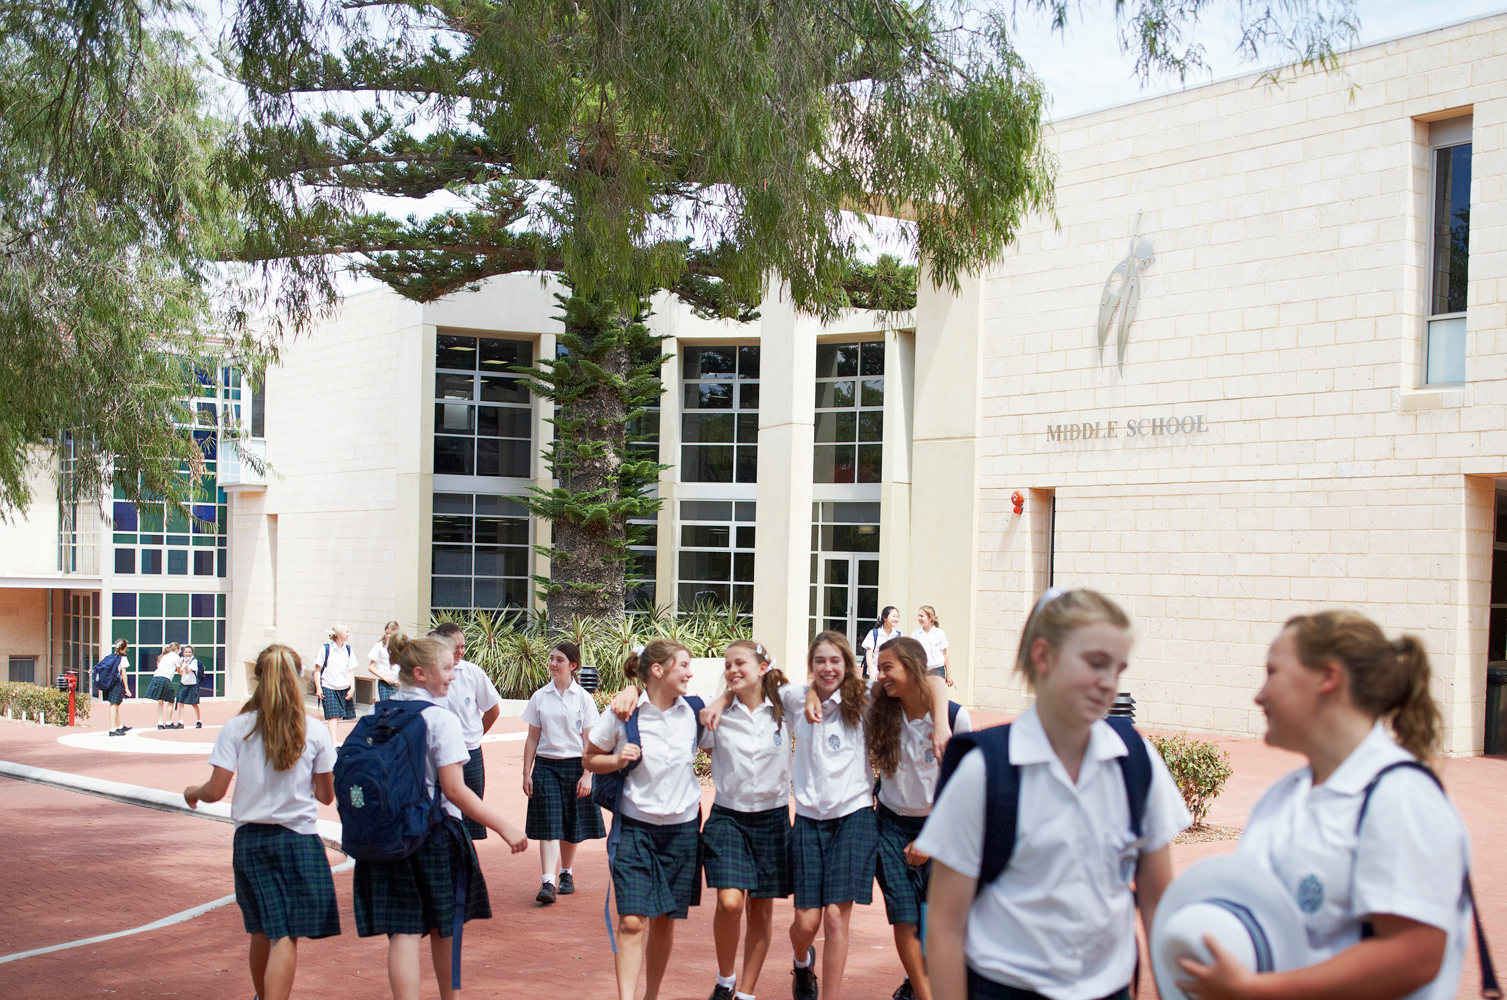 Государственная школа вакансии. Старшая школа в Австралии. Средняя школа вавтралии. Государственные школы в Австралии. Австралийские школьники.